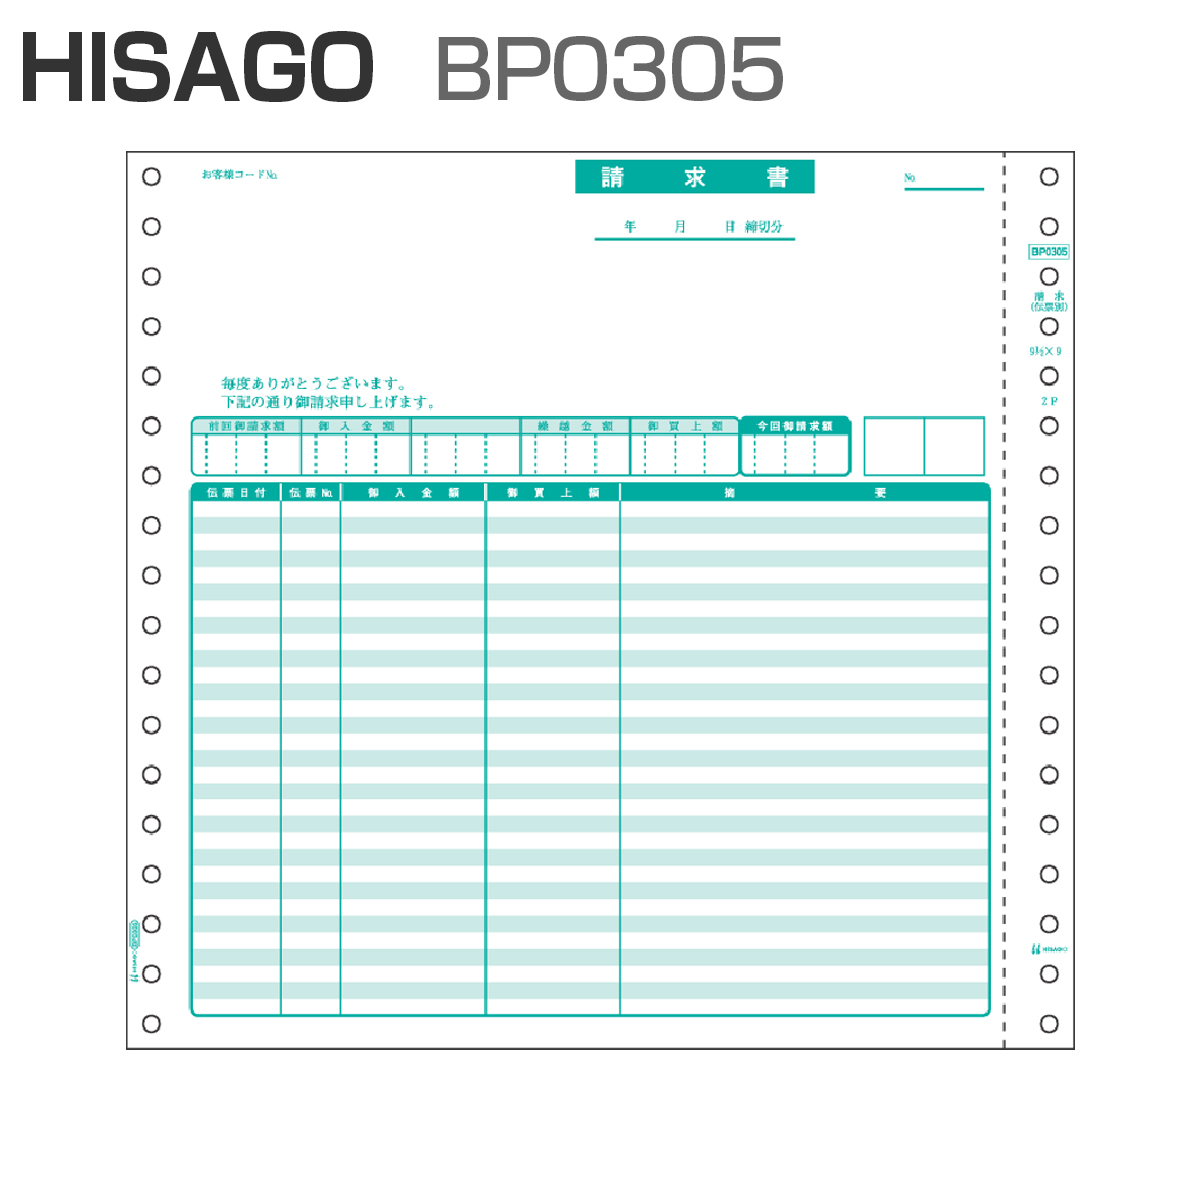 ヒサゴ BP0305 ベストプライス版 請求書 【伝票別】 2P (500セット)